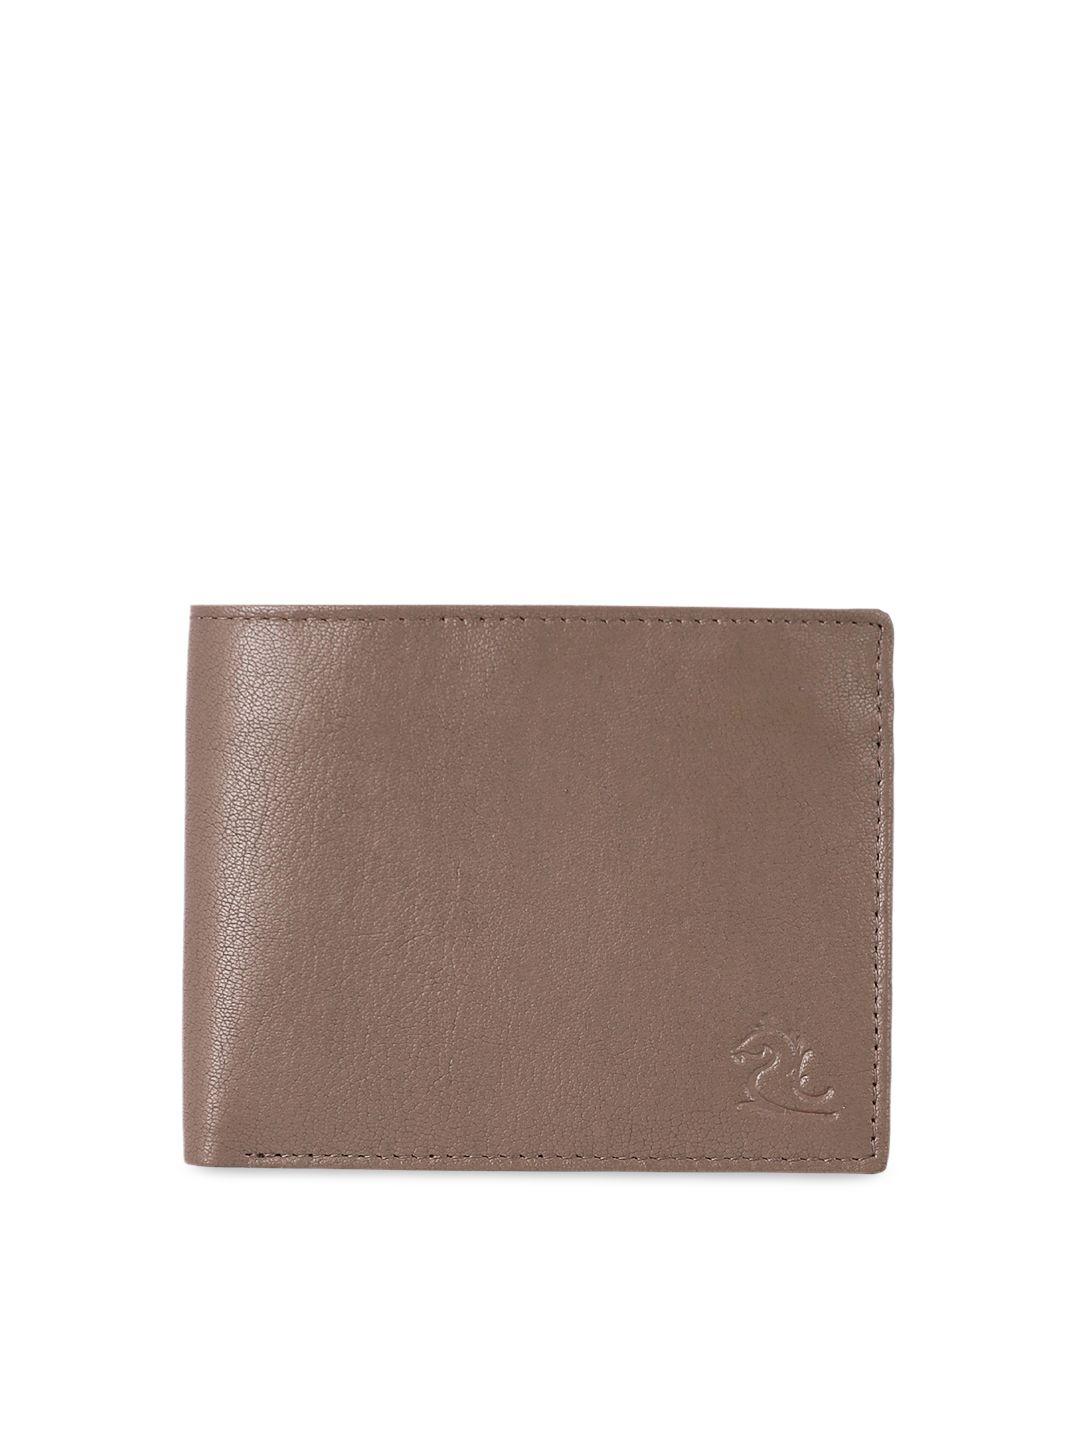 kara men brown two fold leather wallet